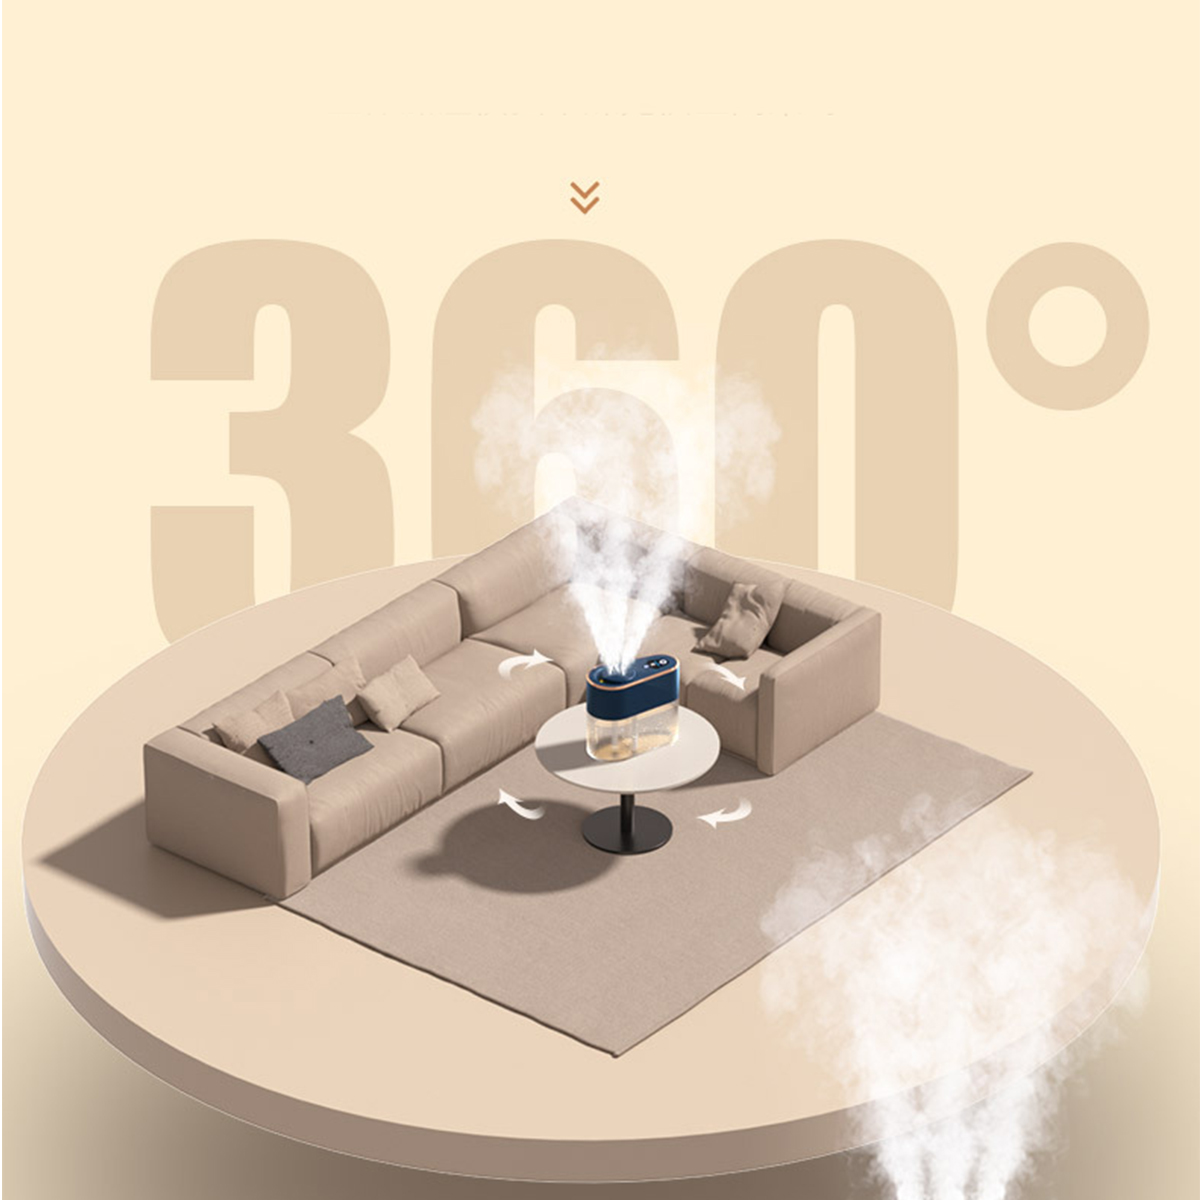 Nano-Befeuchtung Zuhause Smarte Weiß Luftbefeuchter SHAOKE Luftbefeuchter m²) (Raumgröße: 30 leise 2.2L für -